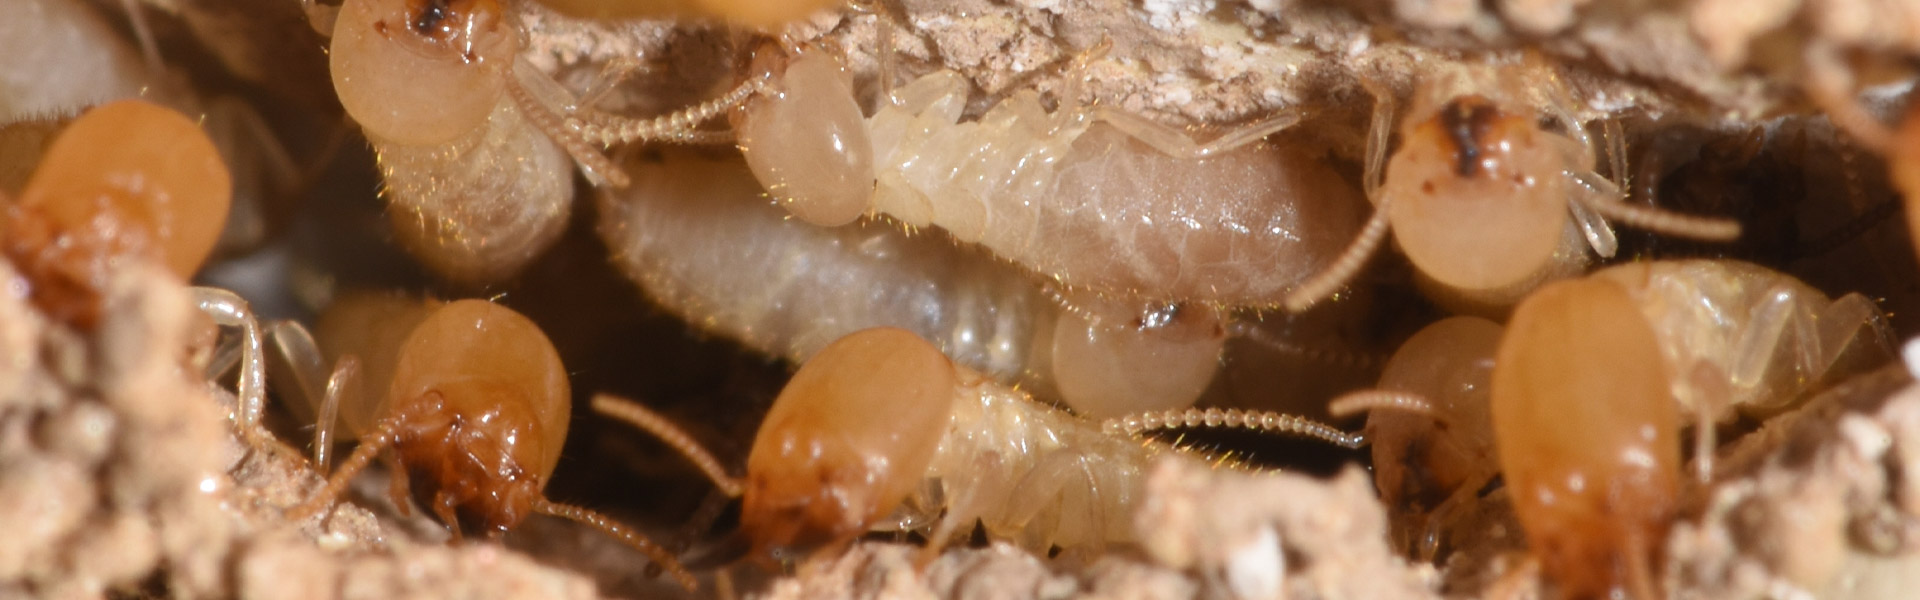 Termites-5